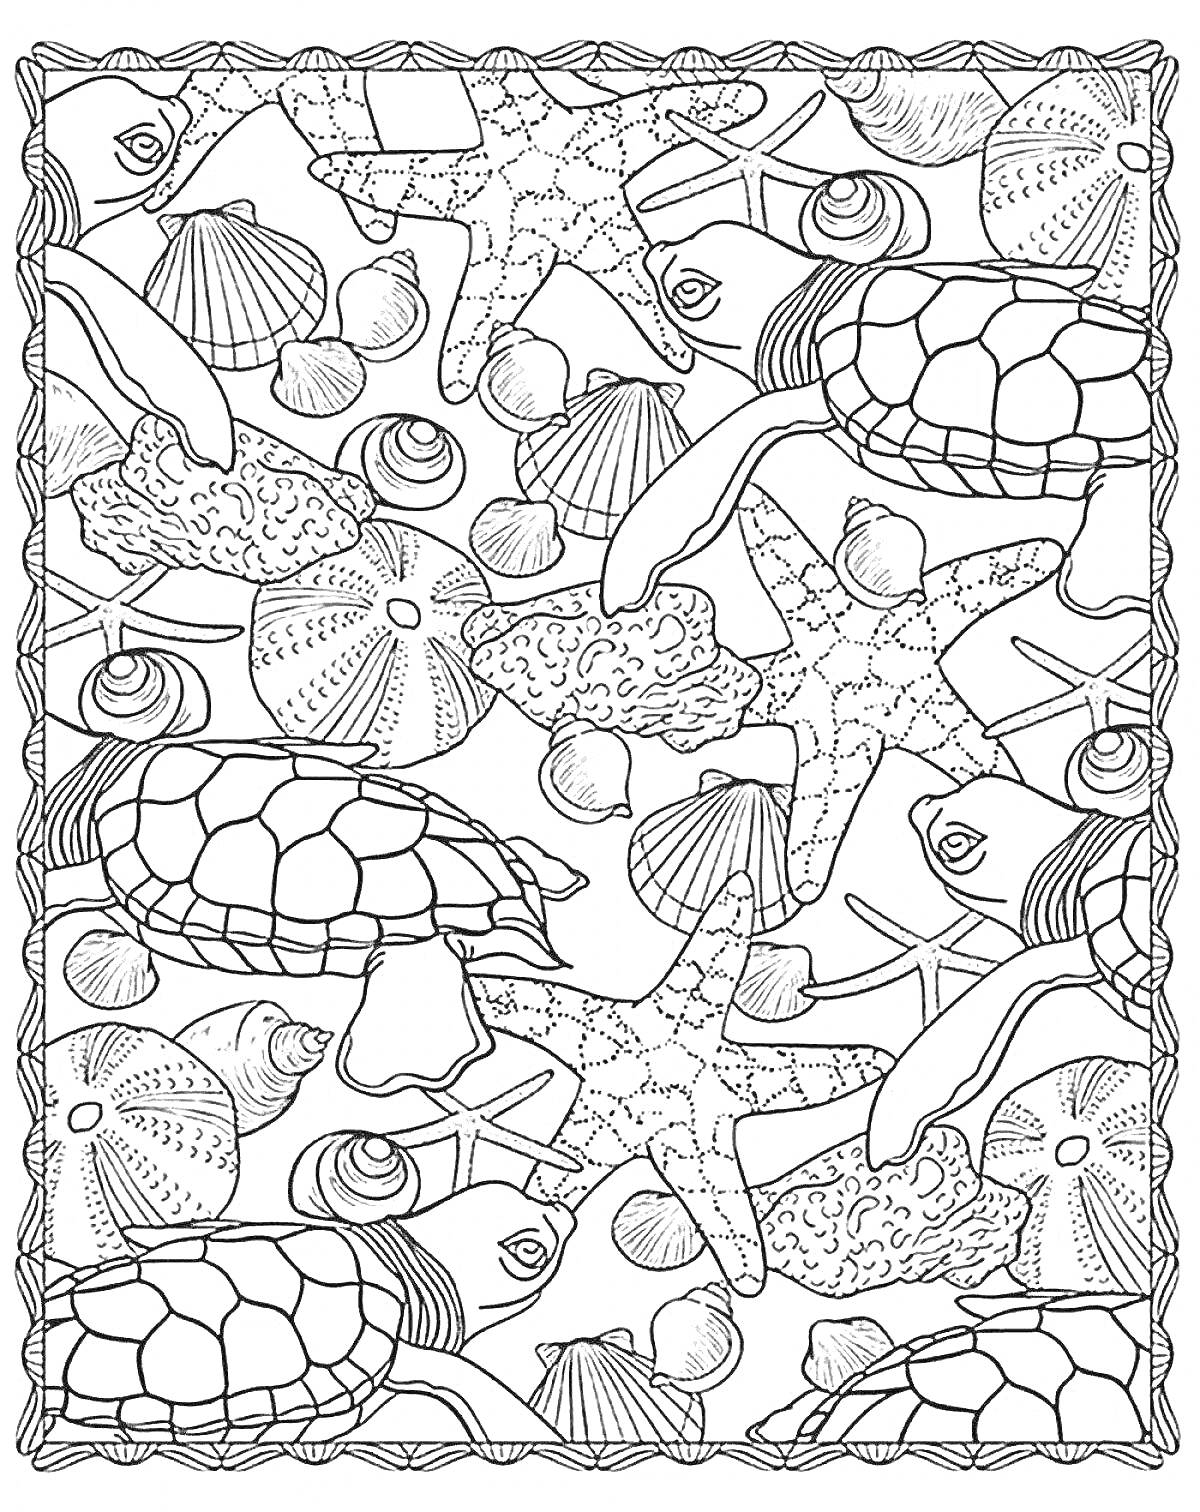 Раскраска морские черепахи, морские звезды, кораллы, ракушки, морские ежи, рыбки, морские улитки